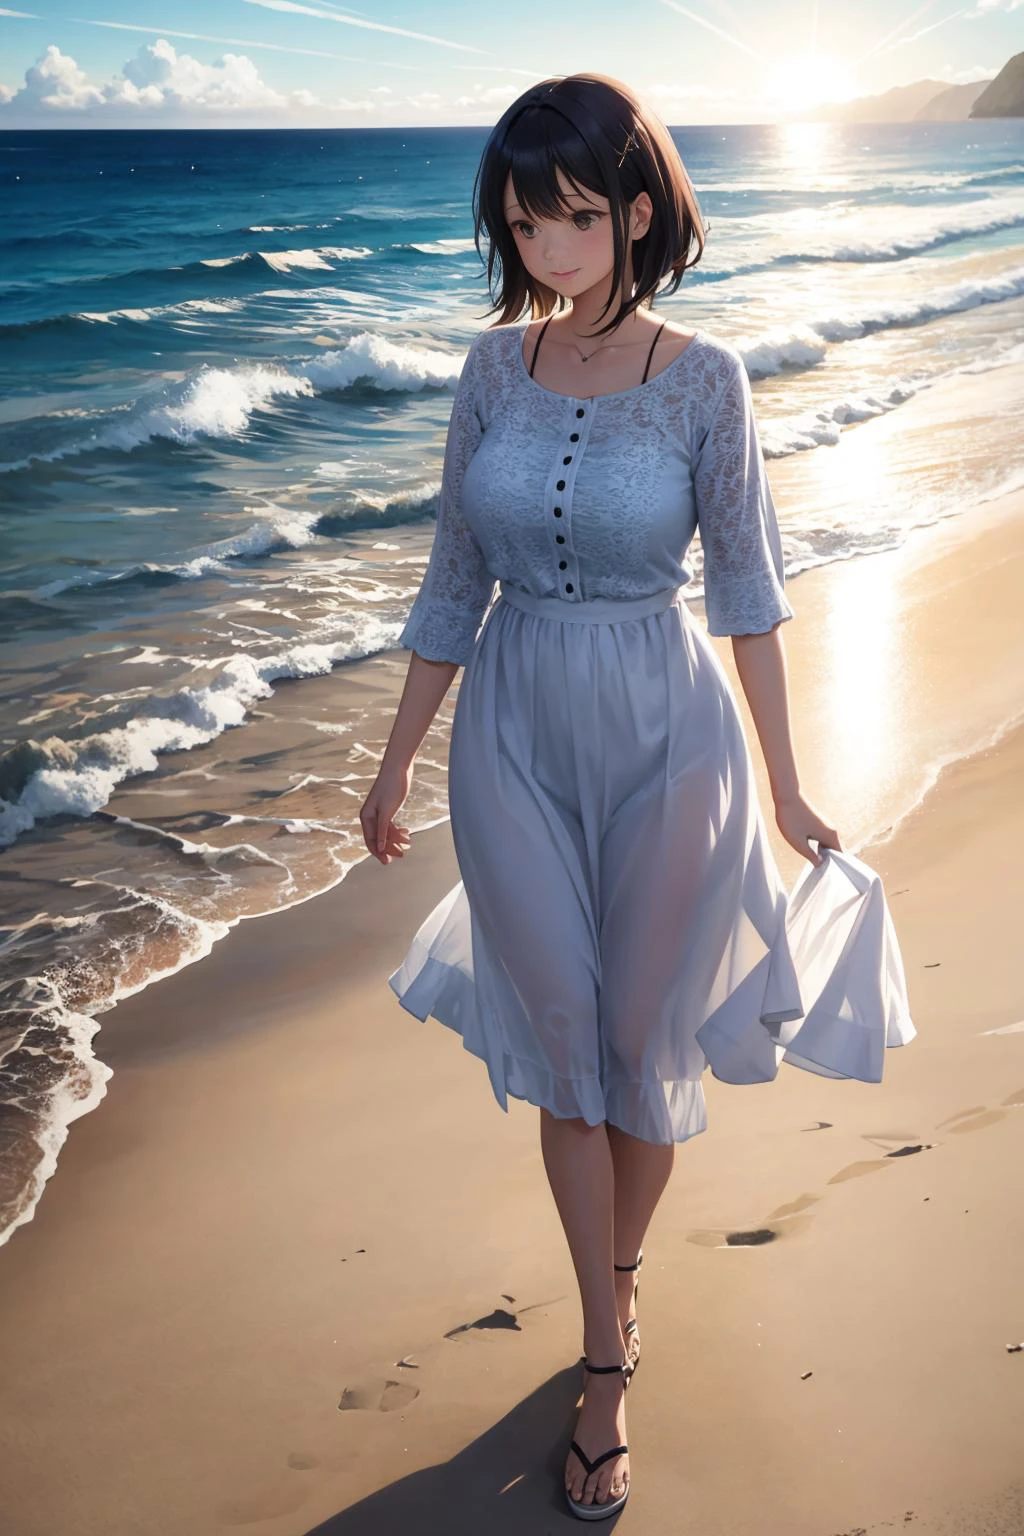 ビーチでの散歩を楽しむ女性. 35歳. 海に反射する太陽の光. ボリュームライト. 反射, 屈折.